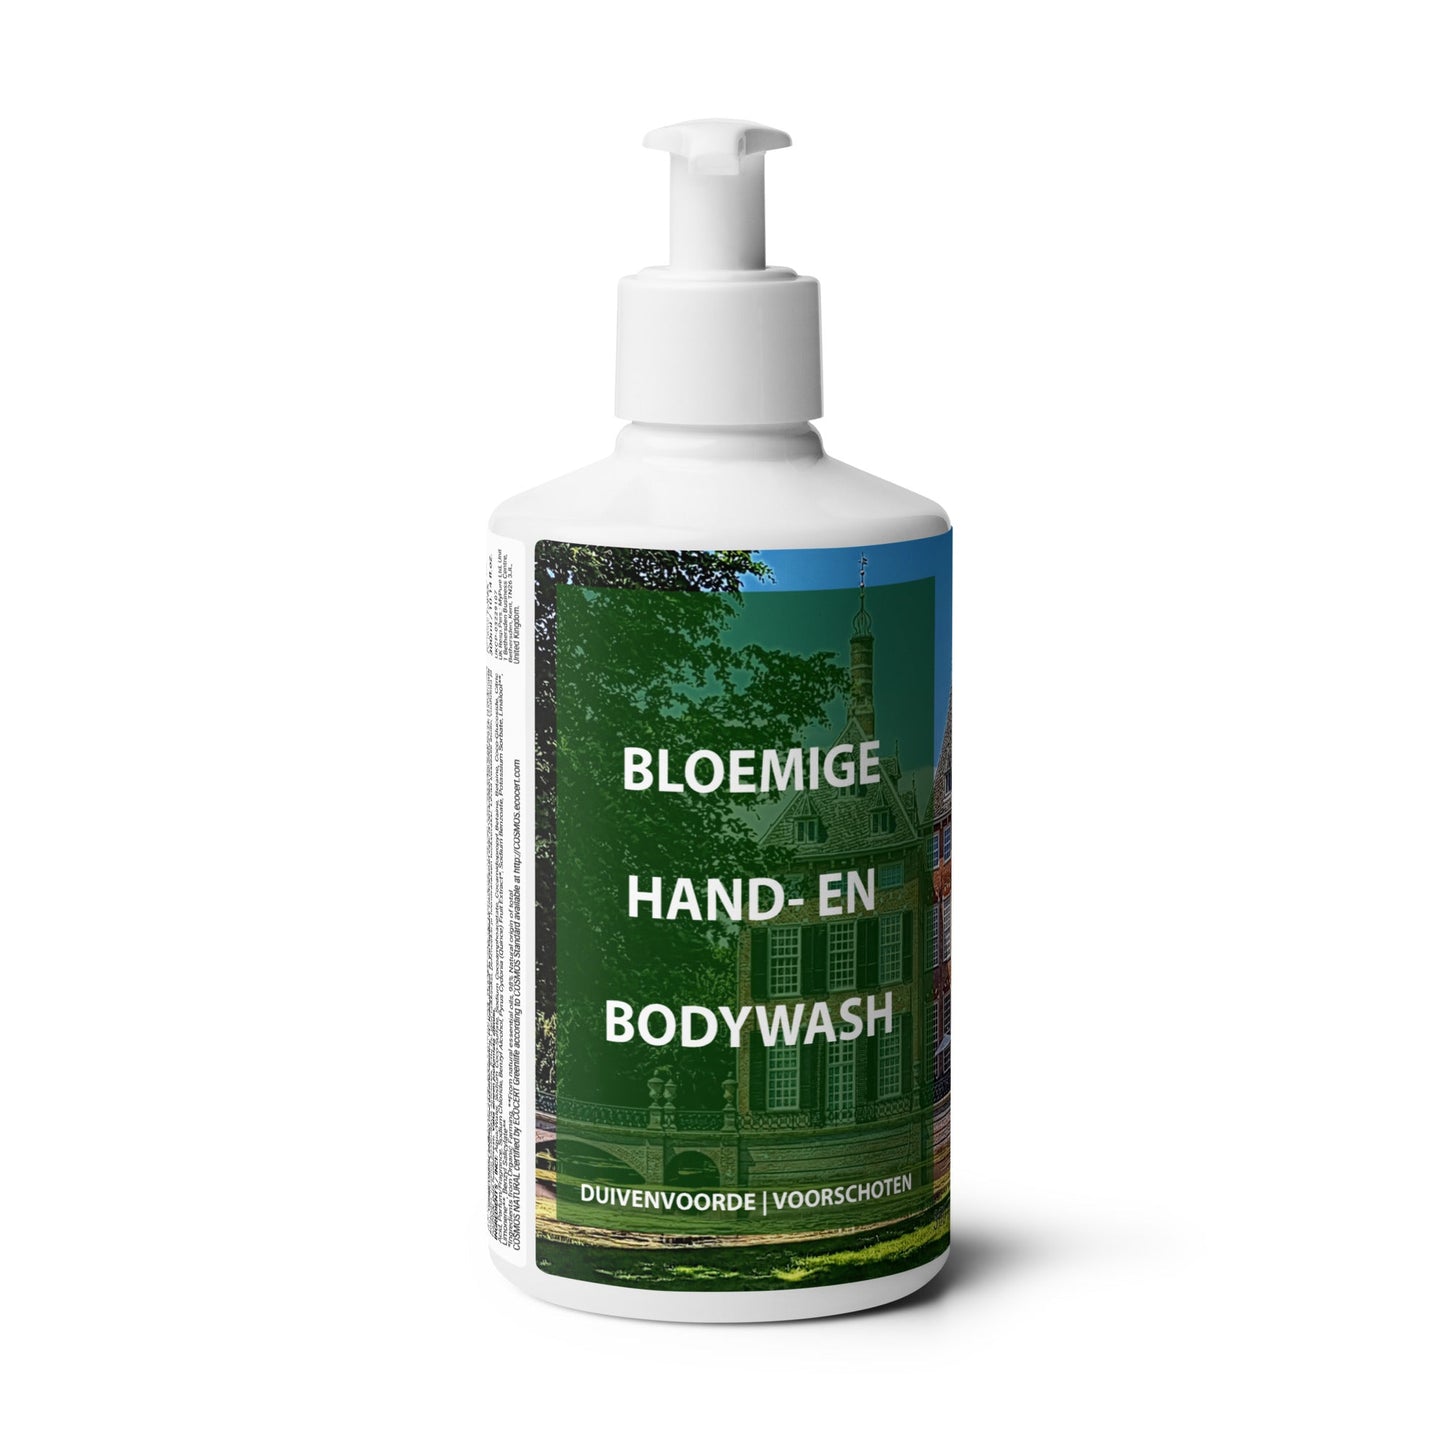 Bloemige hand- en bodywash Duivenvoorde - Webshop I Love Voorschoten